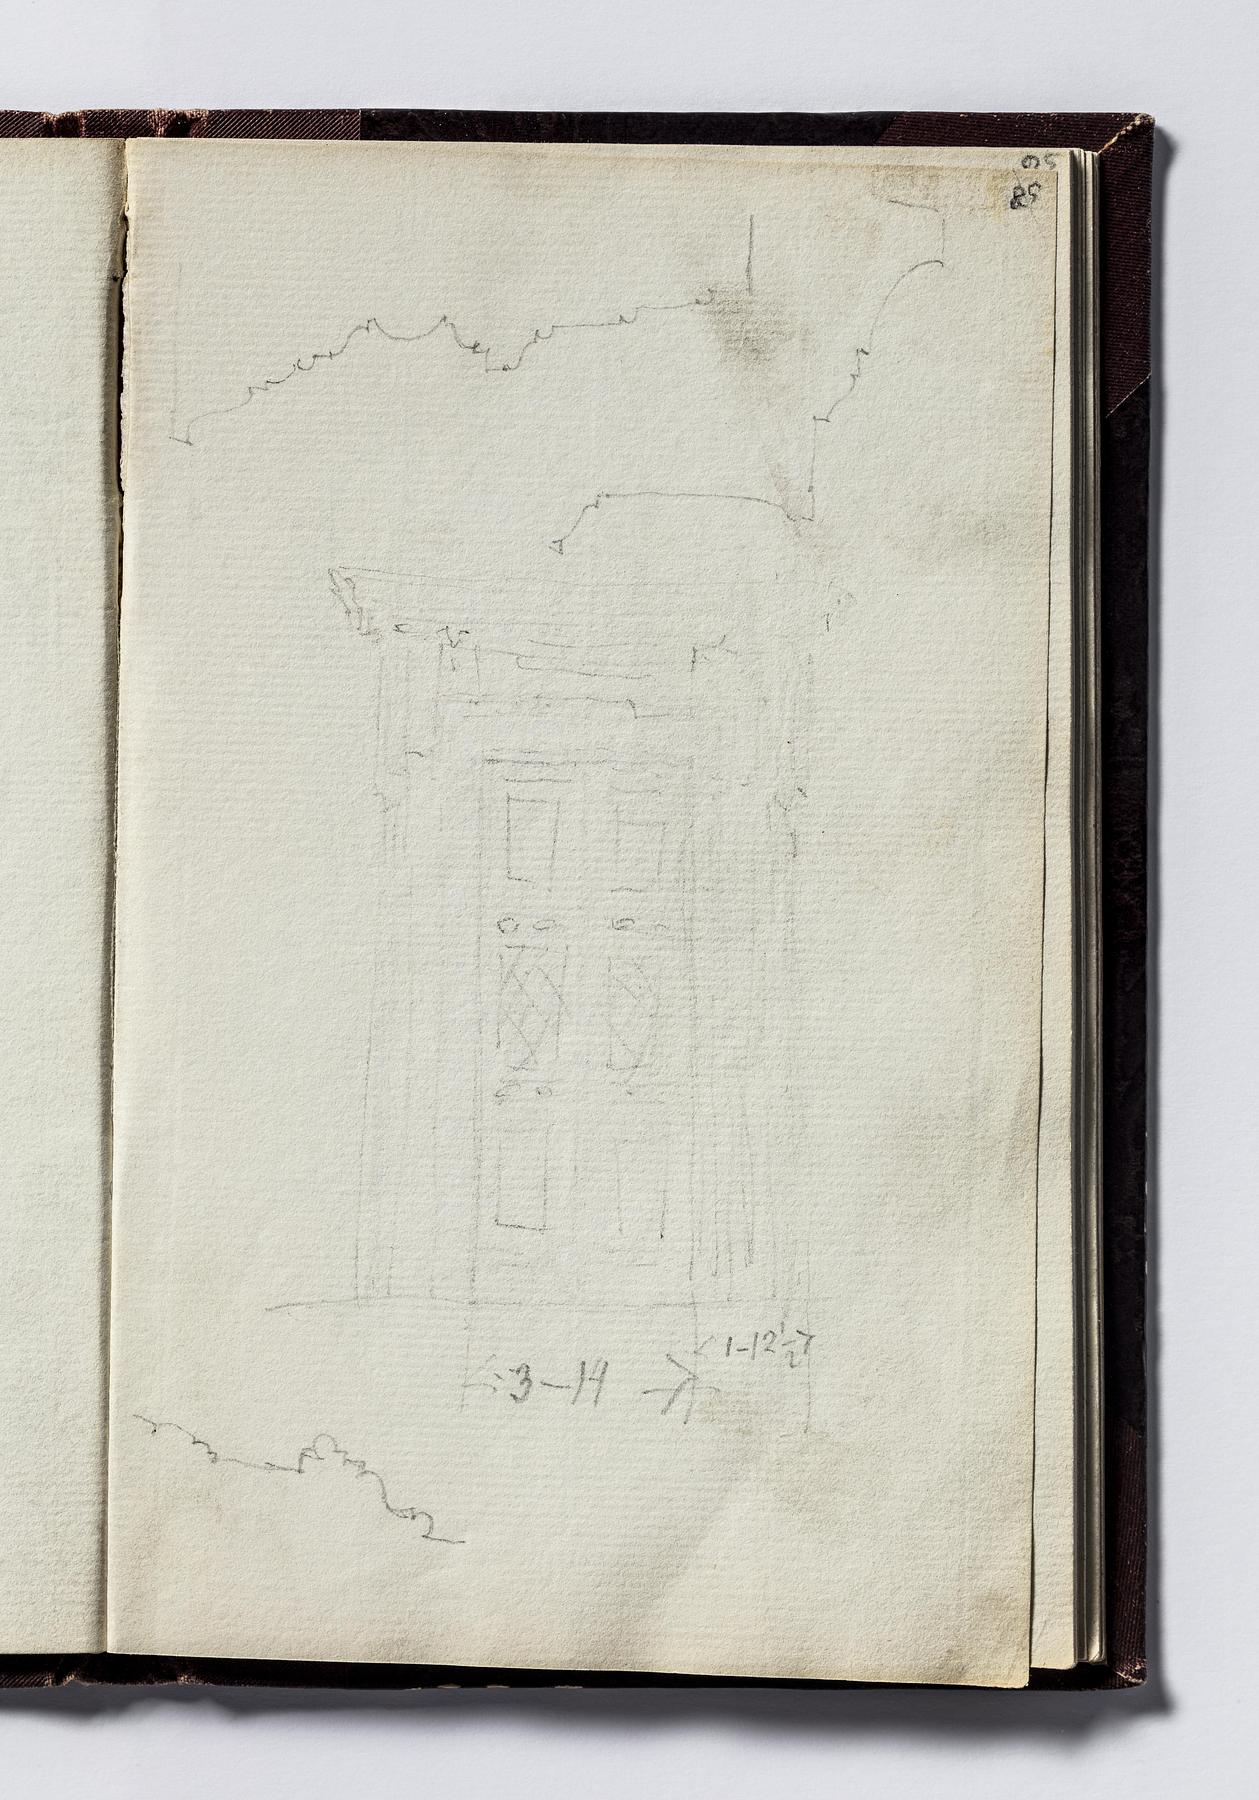 Portal til Thorvaldsens Museum og profil af gesimser, D1778,58